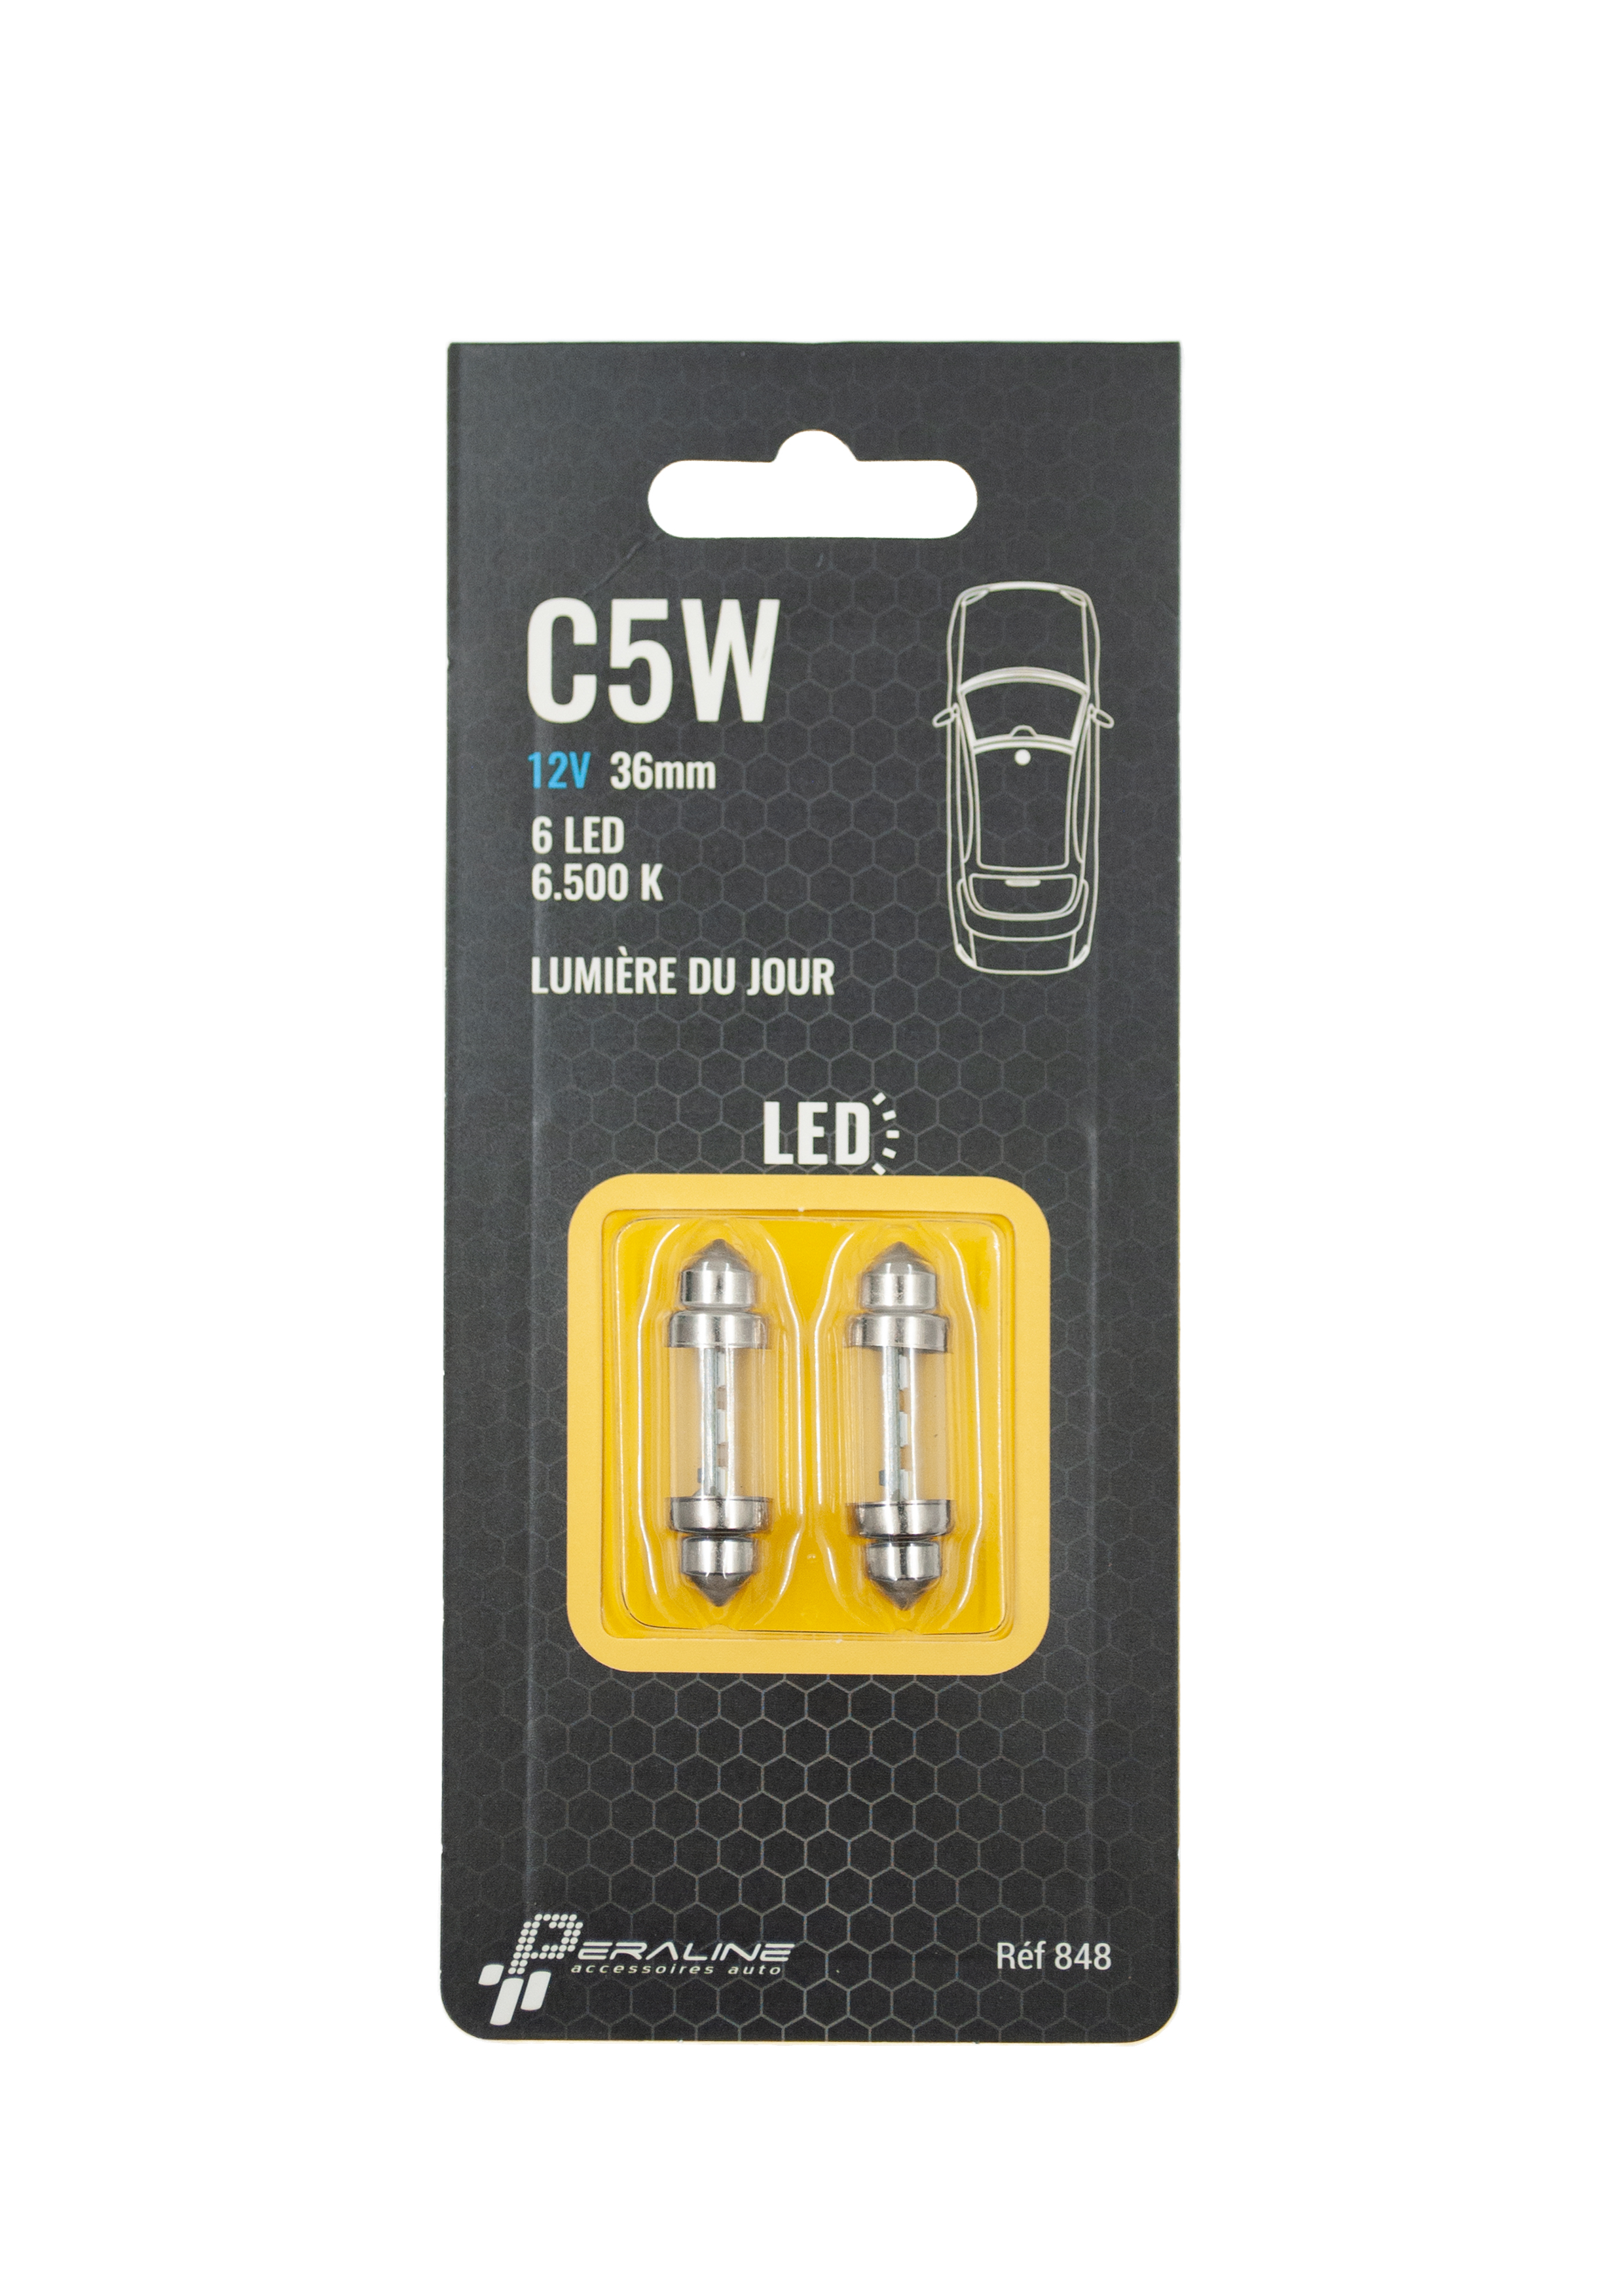 2 bombillas c5w 12v 36mm 6 led white para tu coche al mejor precio